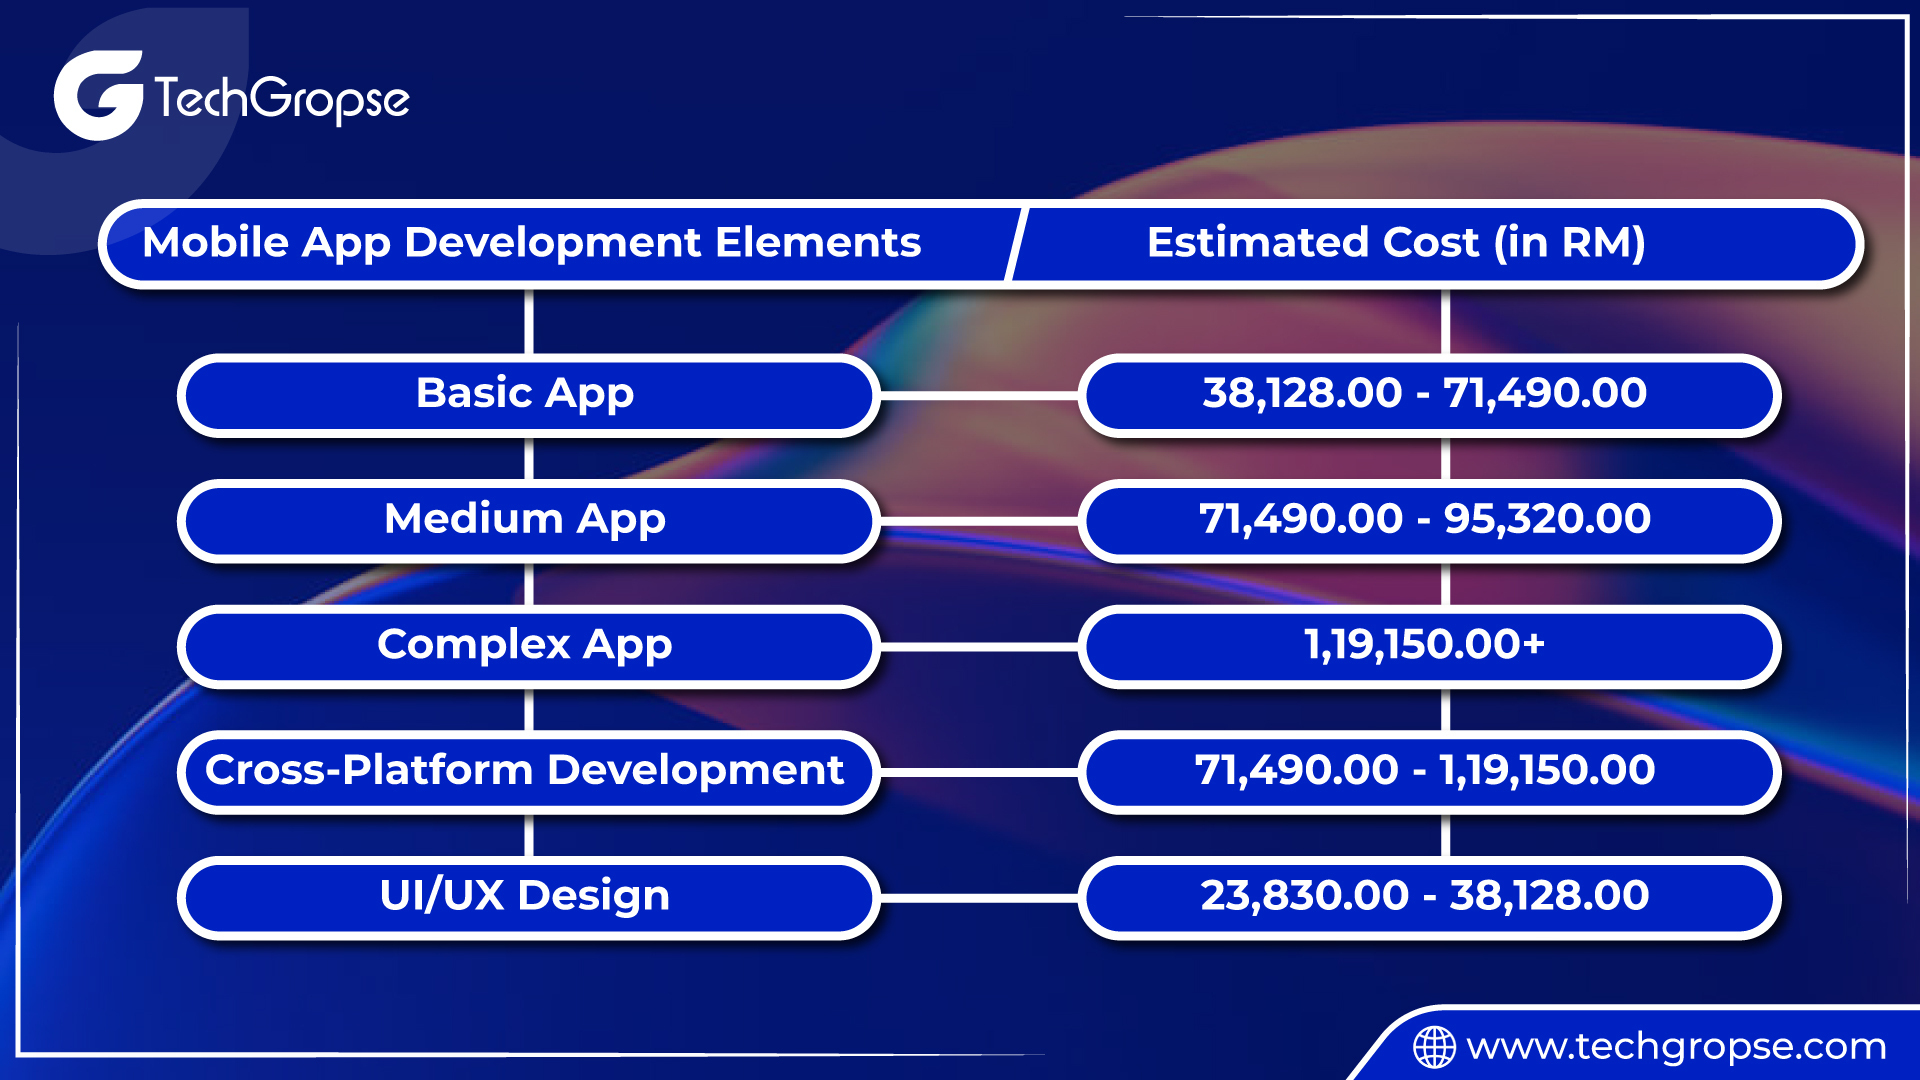 Mobile app development cost estimates in Malaysia